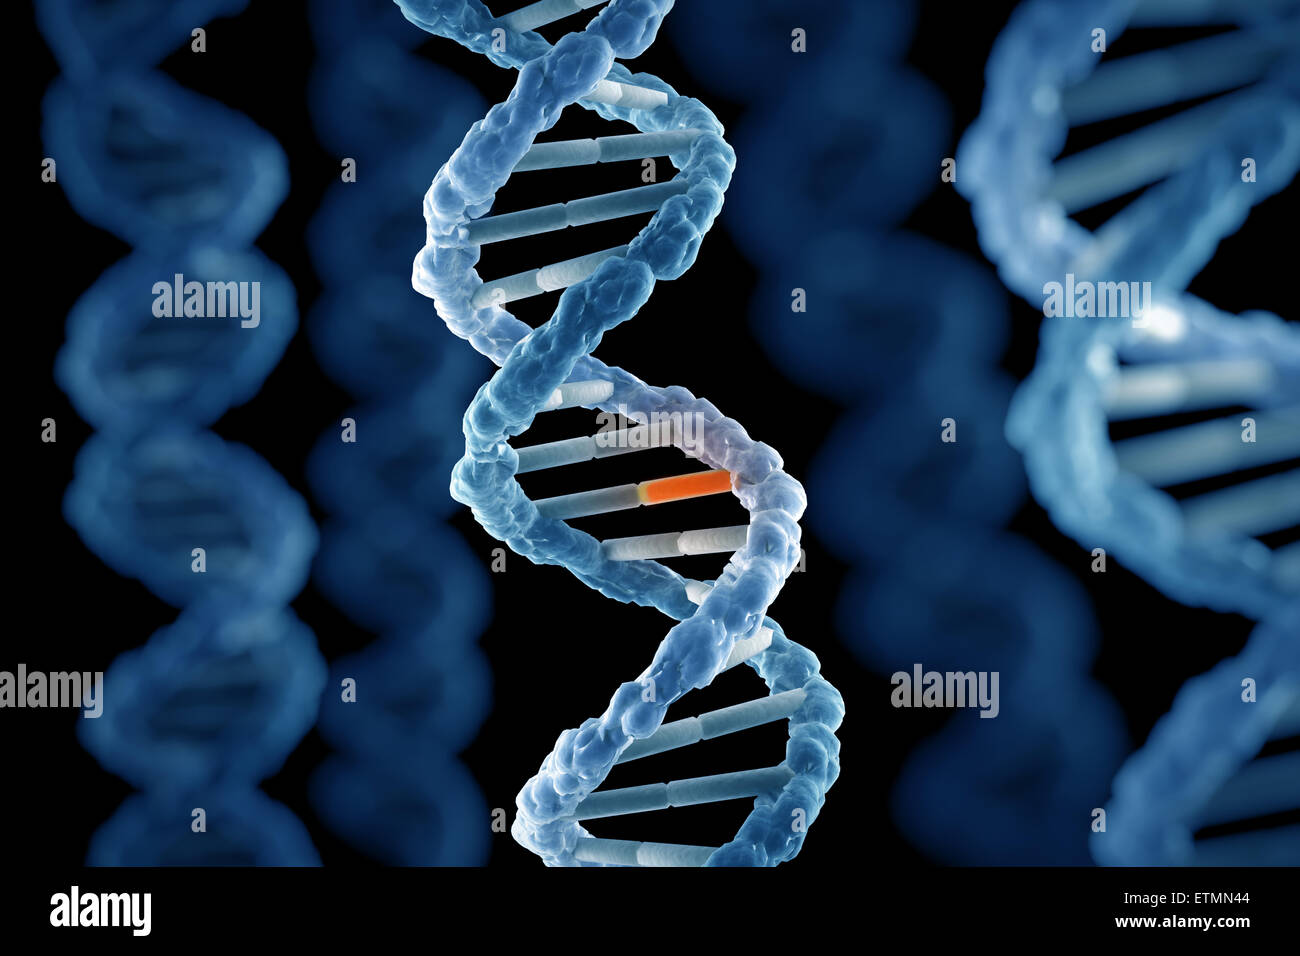 Stilisierte Darstellung der Stränge der menschlichen DNA Desoxyribonukleinsäure, während der Replikation Gen mutiert. Stockfoto